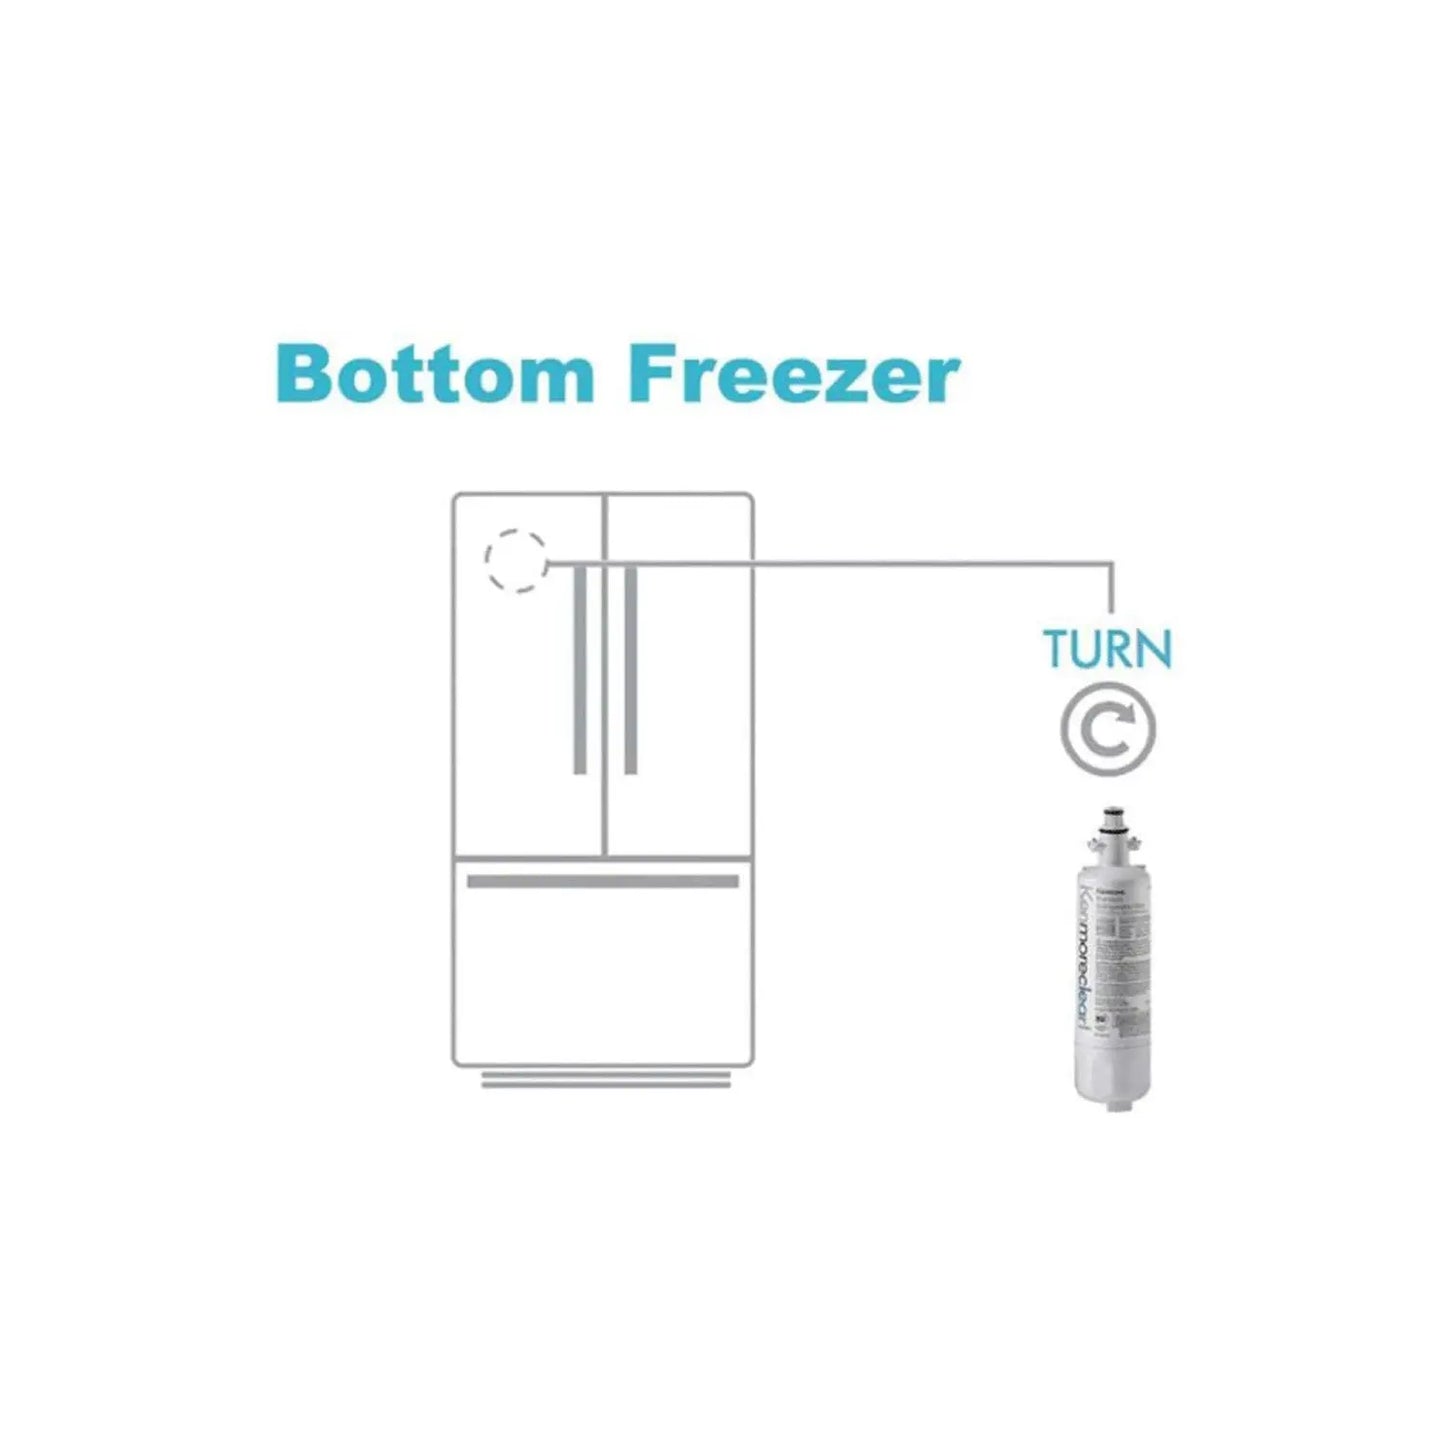 Κеnmore 9690 water filter Replacement Refrigerator Water Filter. Kenmore